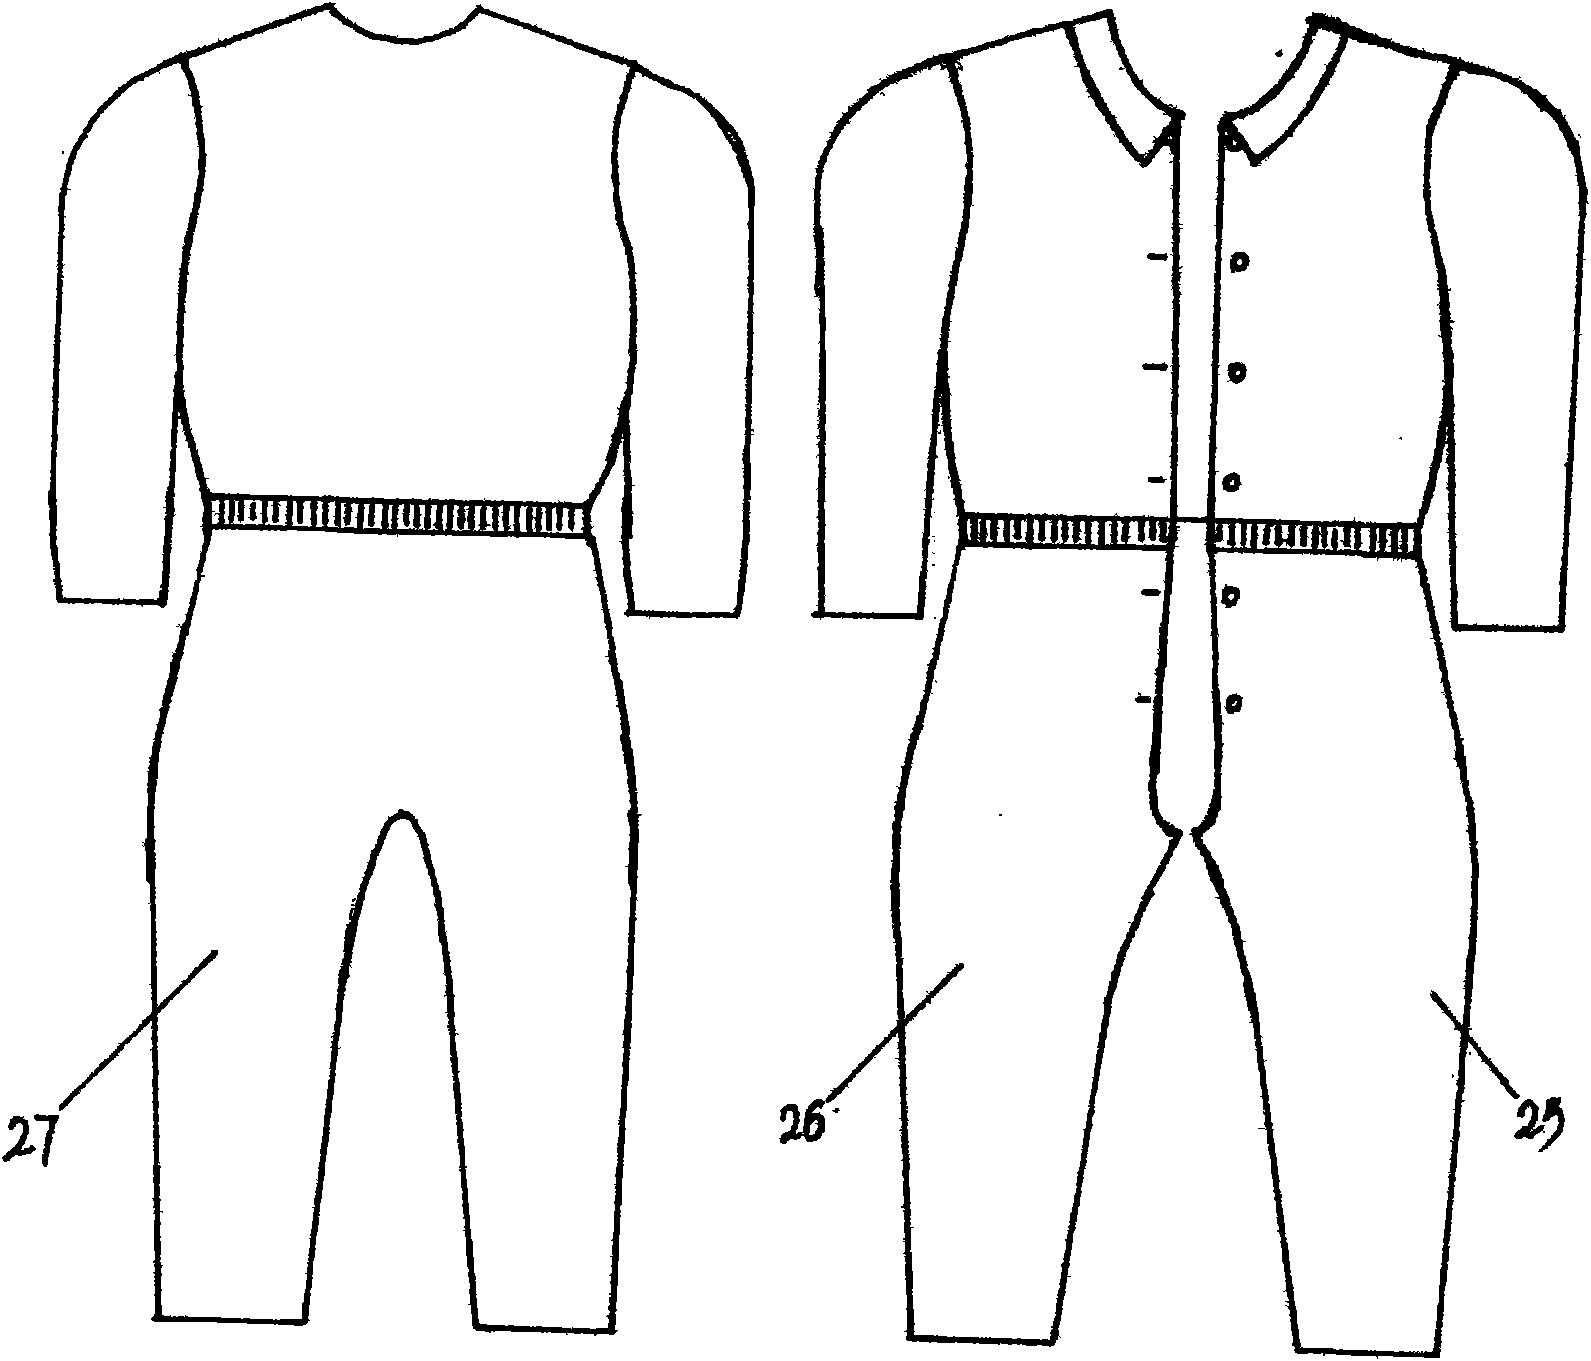 Split type patient suits